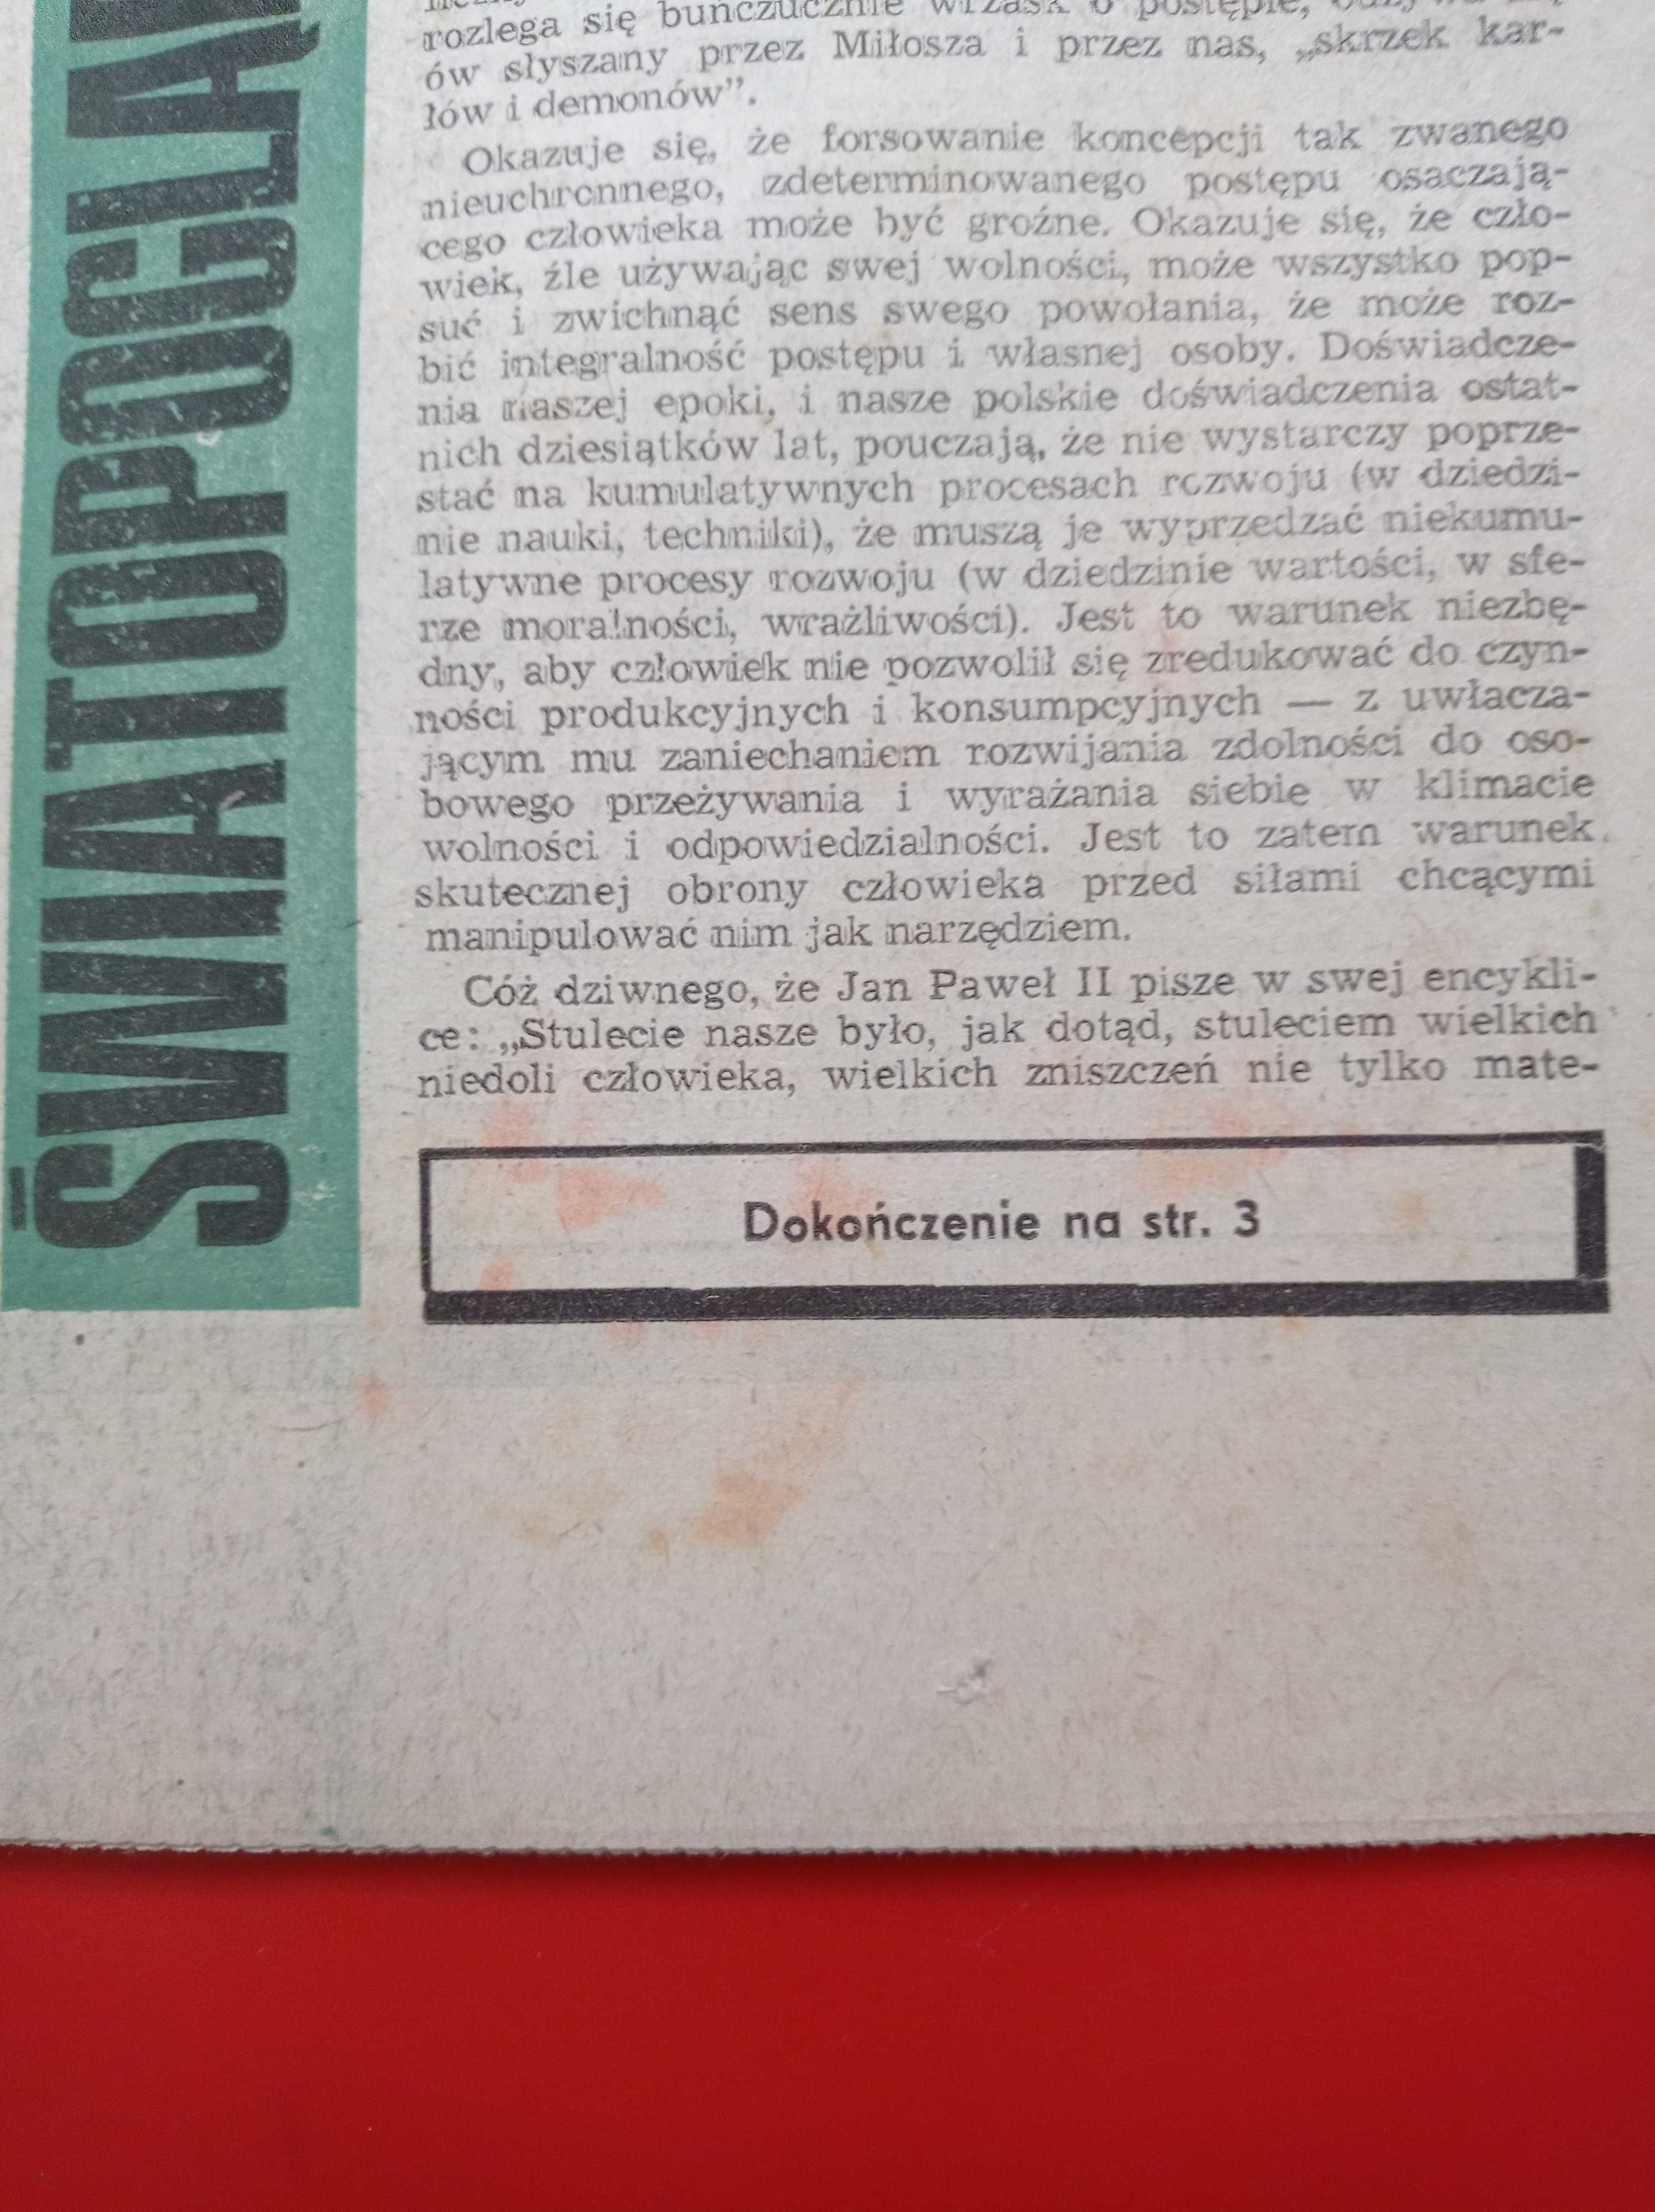 Kierunki tygodnik nr 7 / 1981; 15 lutego 1981